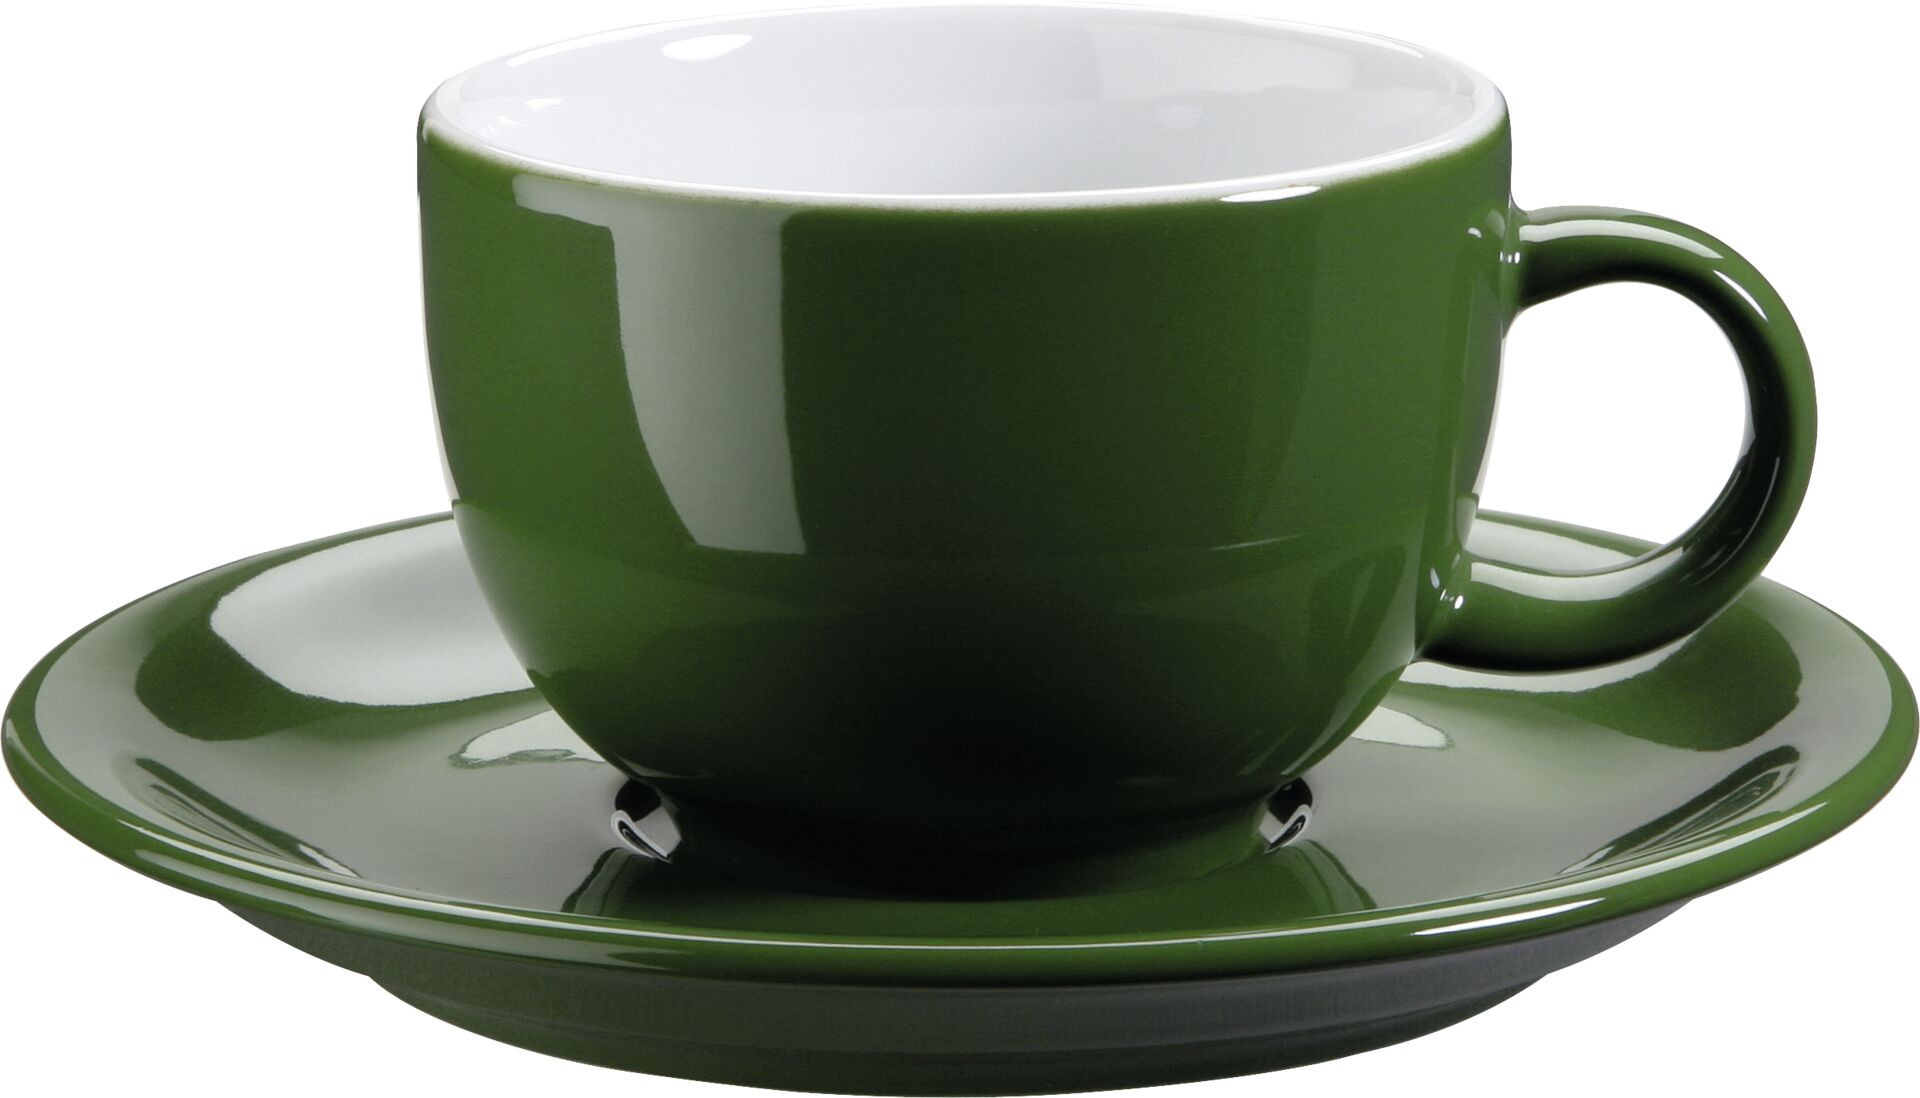 Kaffee- / Cappuccinotasse "Barista" grün